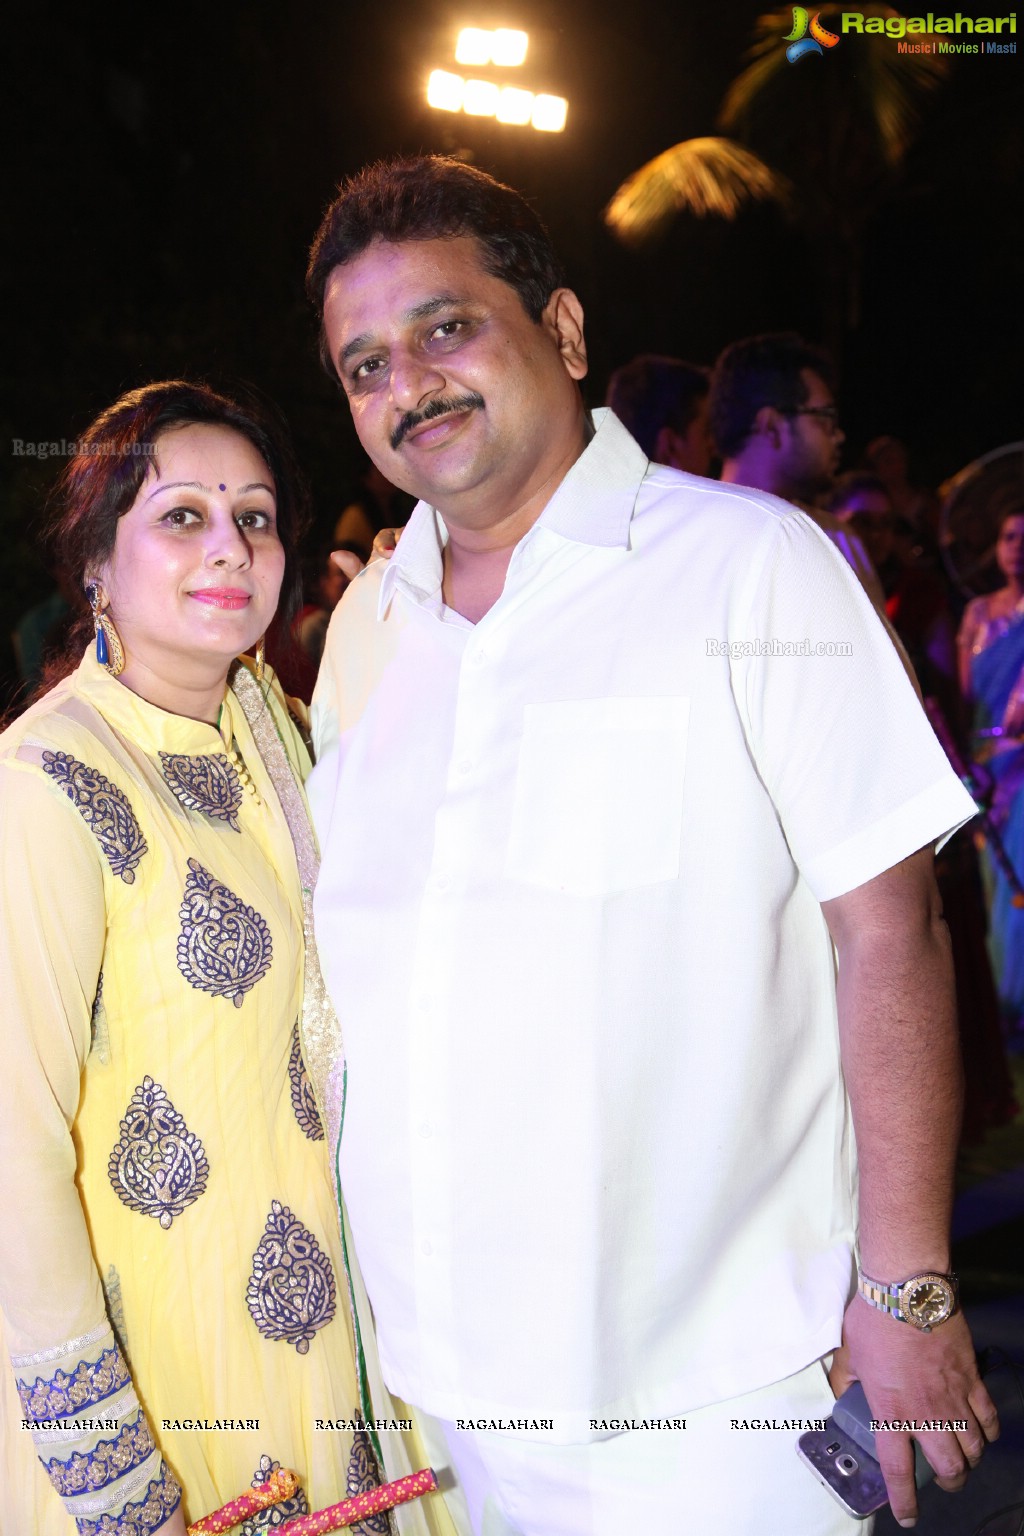 Legend Navratri Utsav 2015 at Imperial Gardens (Day 2), Hyderabad